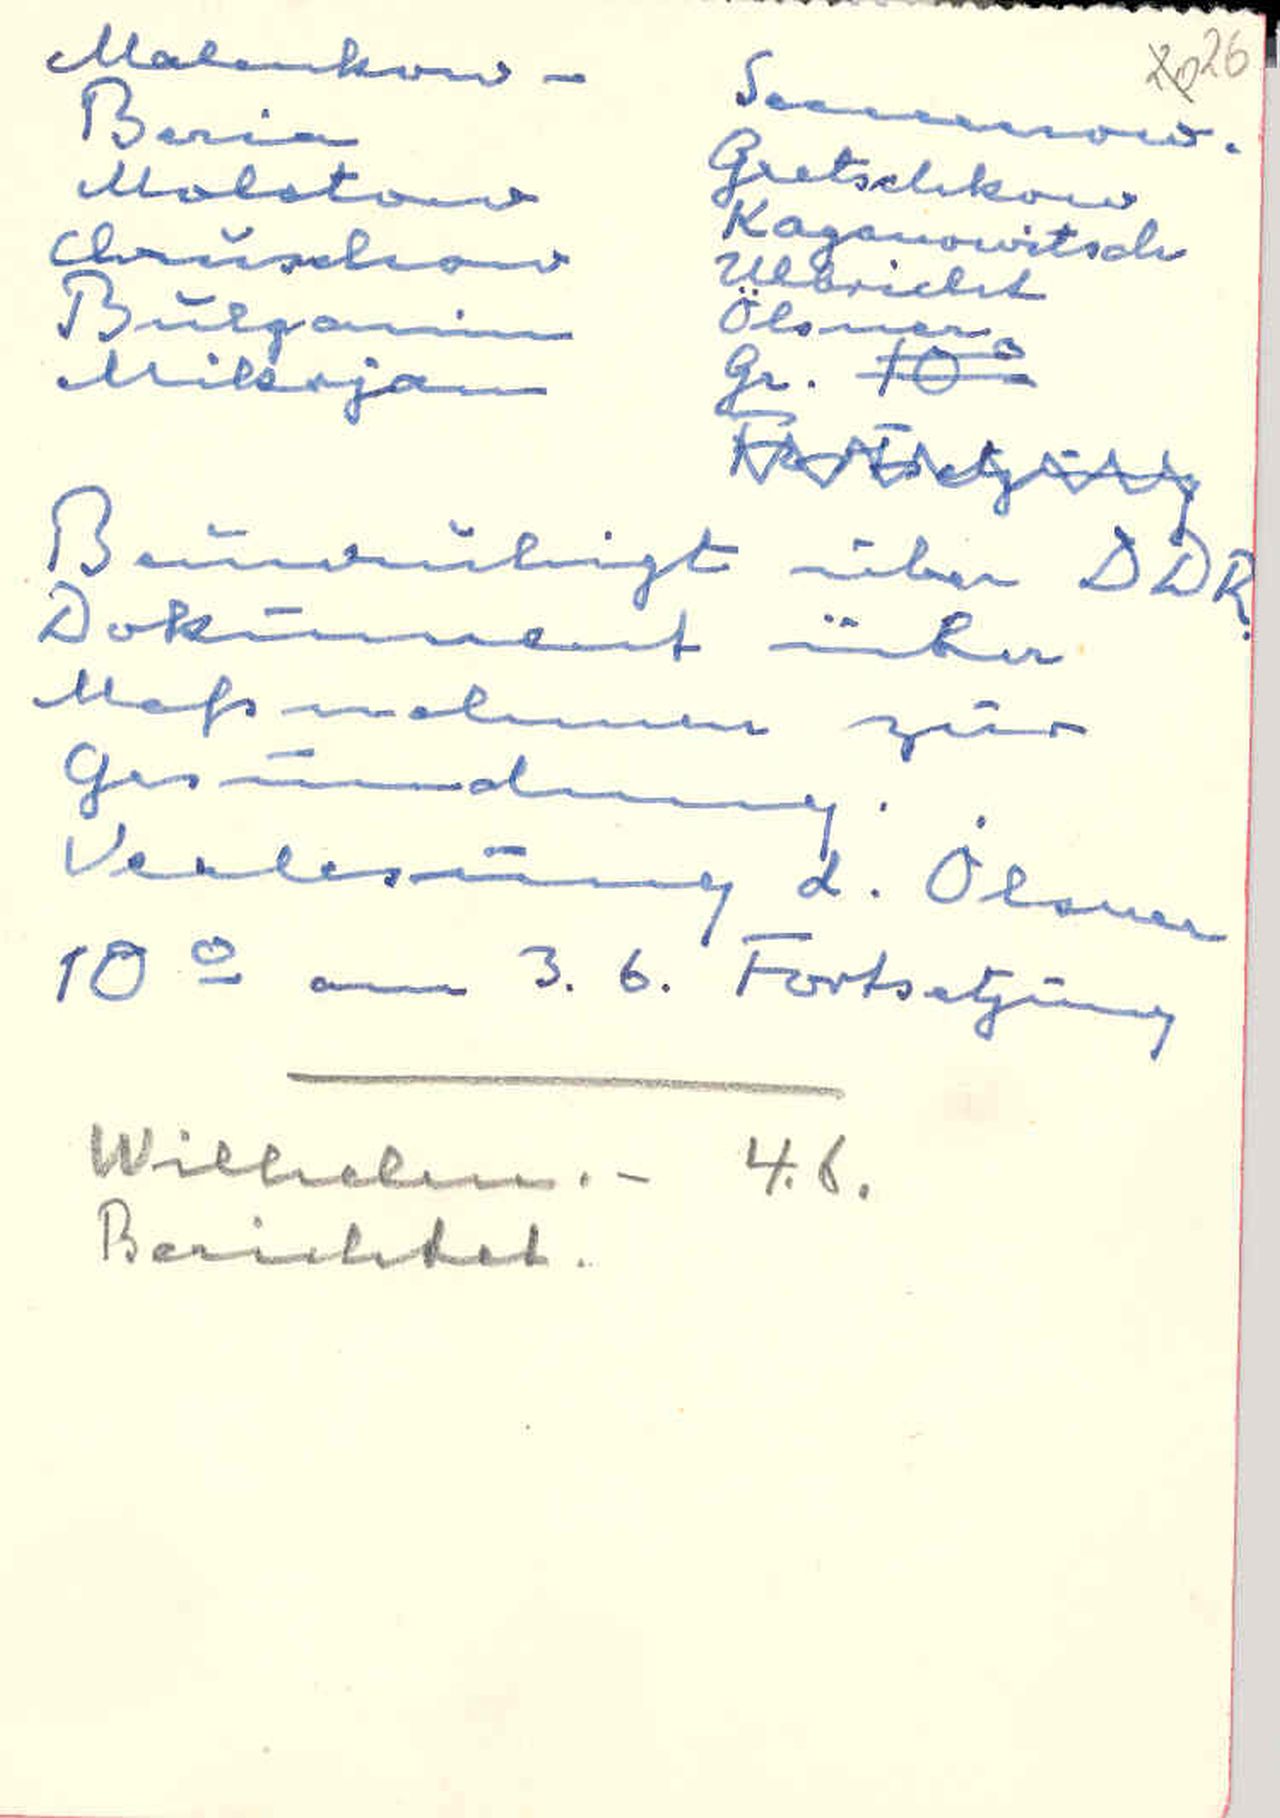 Notizen des Ministerpräsidenten der Deutschen Demokratischen Republik (DDR), Otto Grotewohl, über ein Treffen von führenden Mitgliedern des SED-Regimes mit der sowjetischen Führung in Moskau am 2. Juni 1953. 